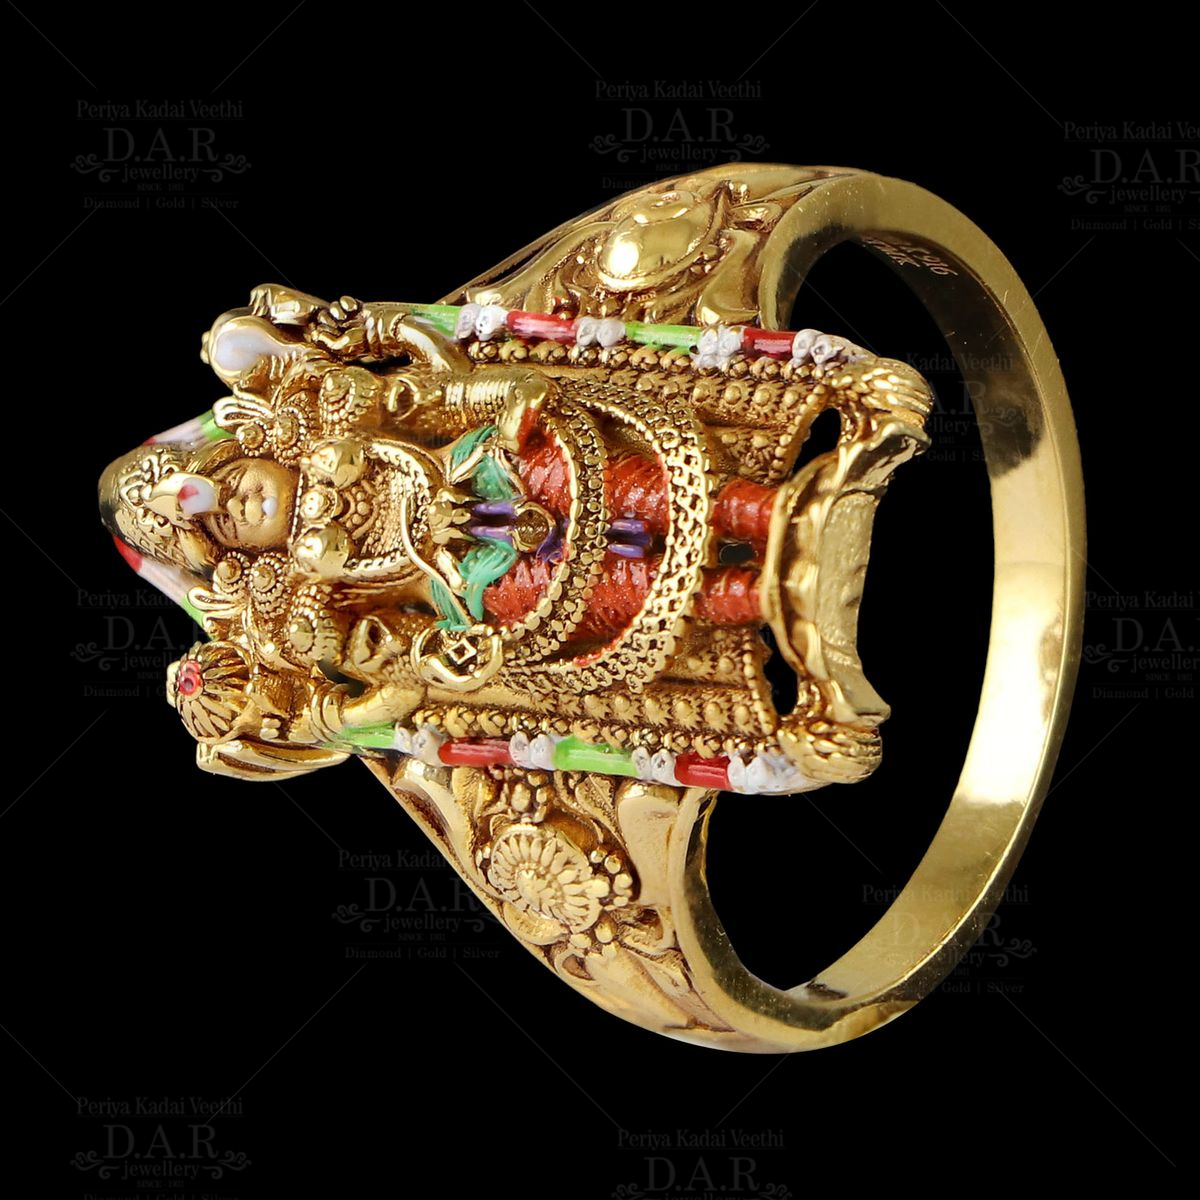 22K Gold 'Balaji' Ring For Men with Cz - 235-GR4379 in 8.550 Grams